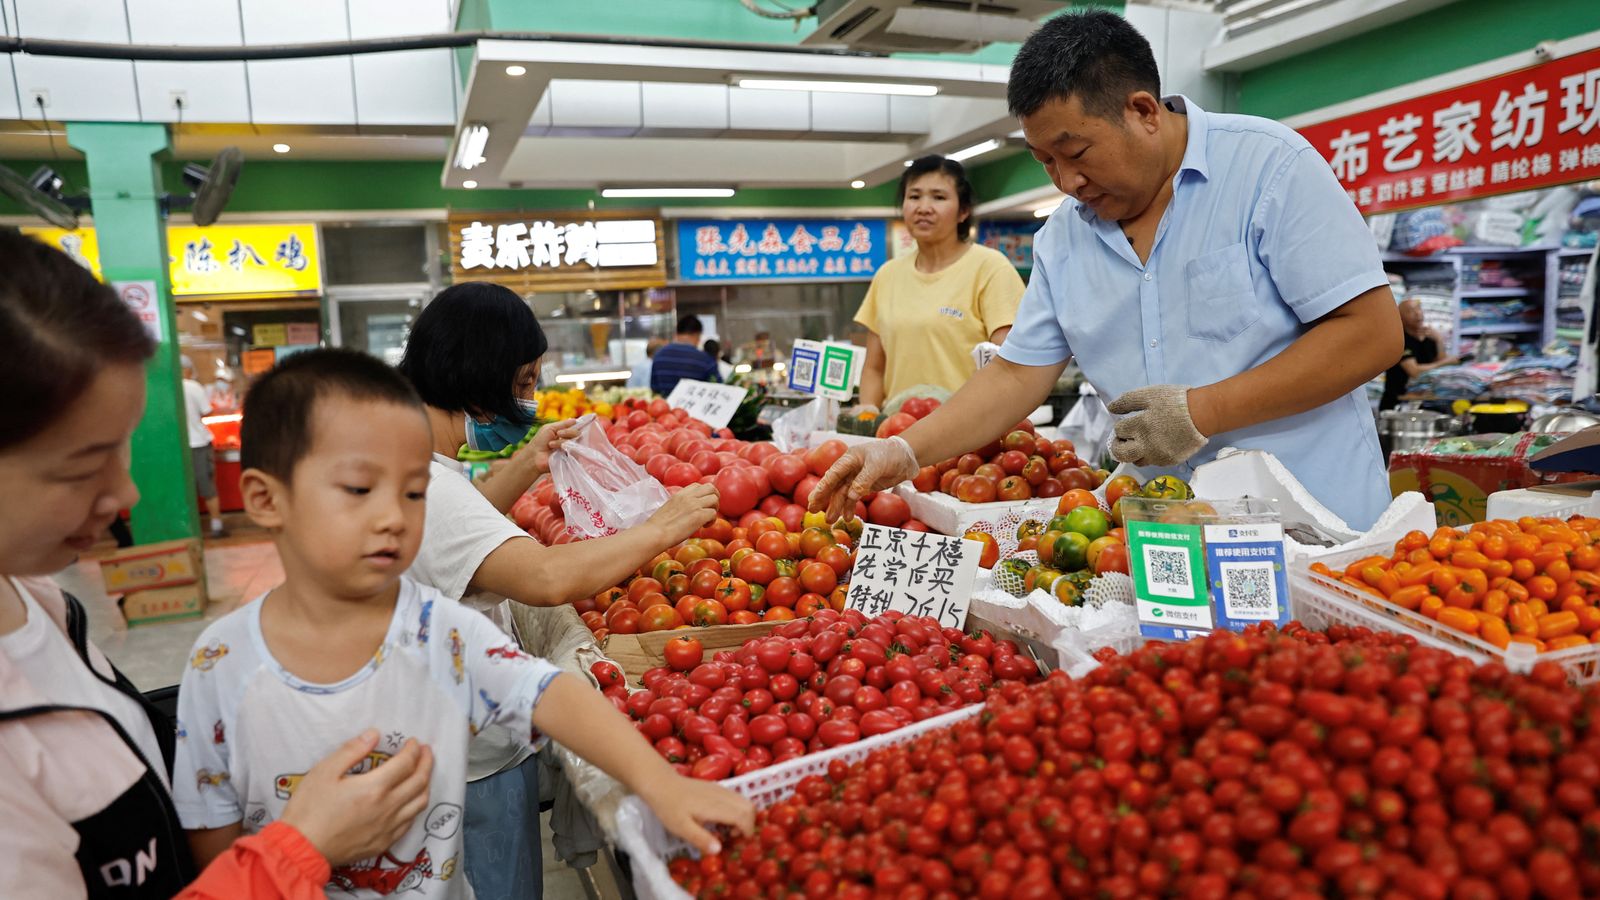 Опасения по поводу дефляции в Китае из-за падения цен |  Деловые новости